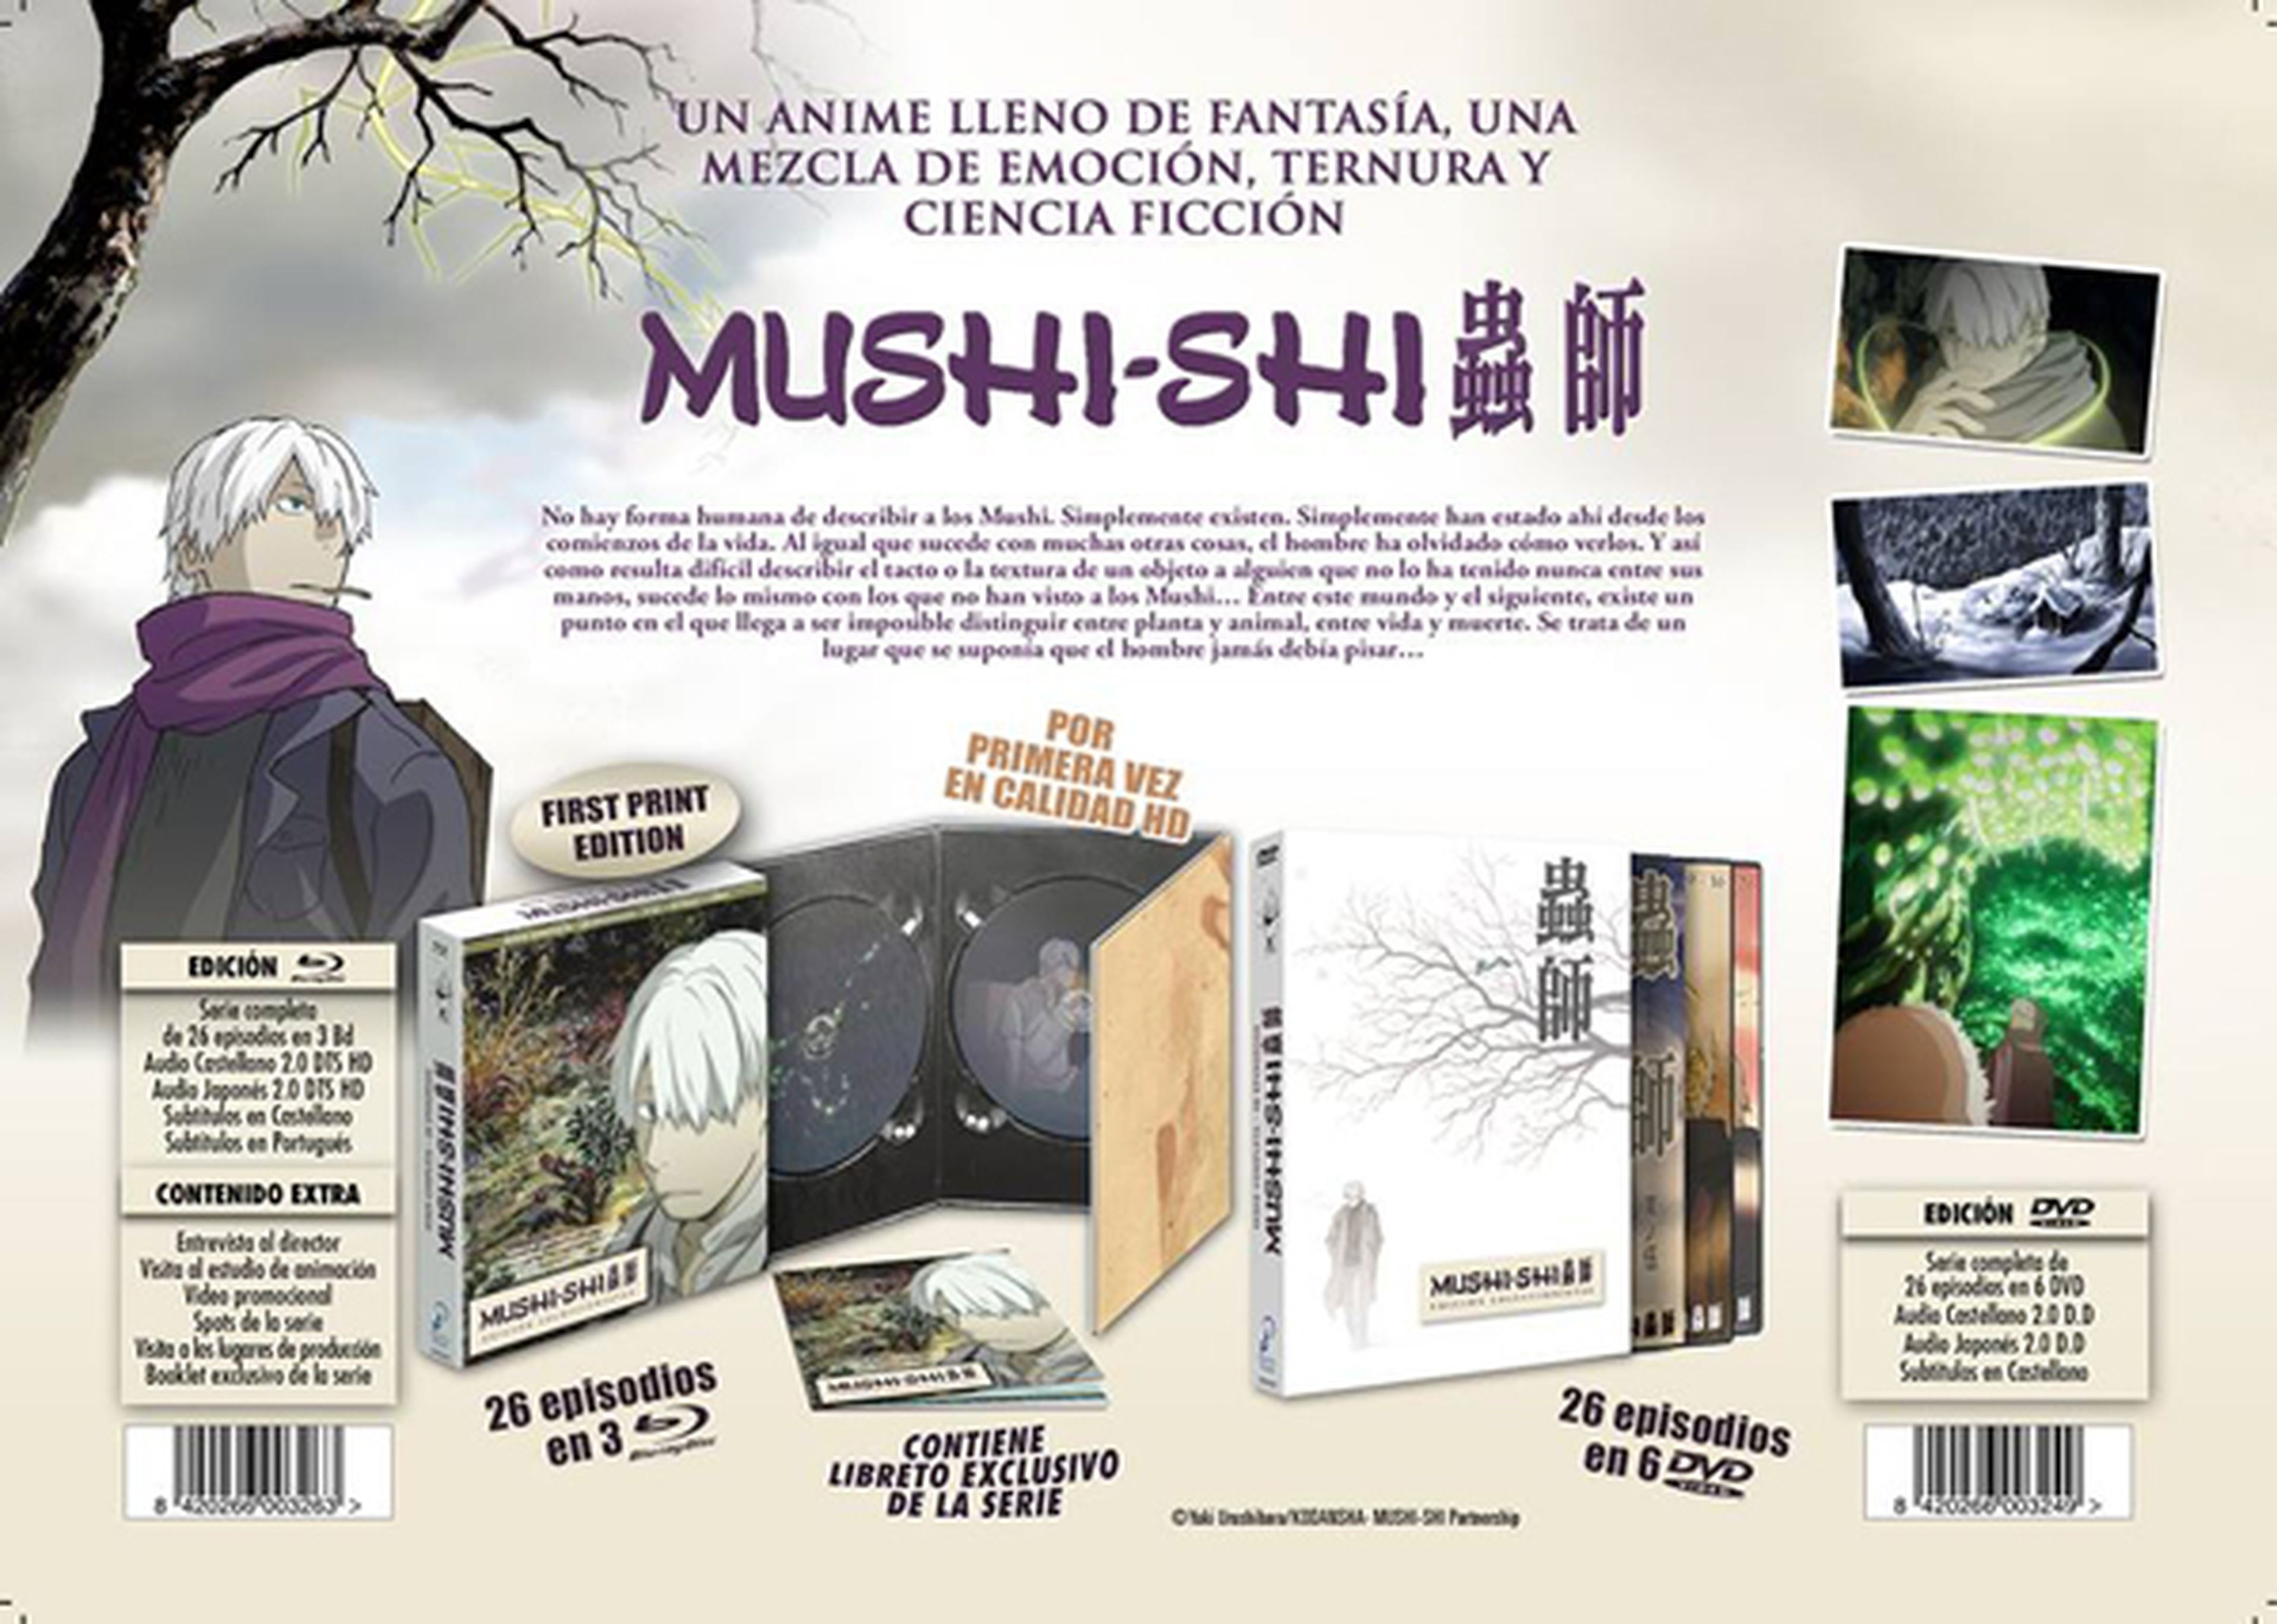 Mushi-shi